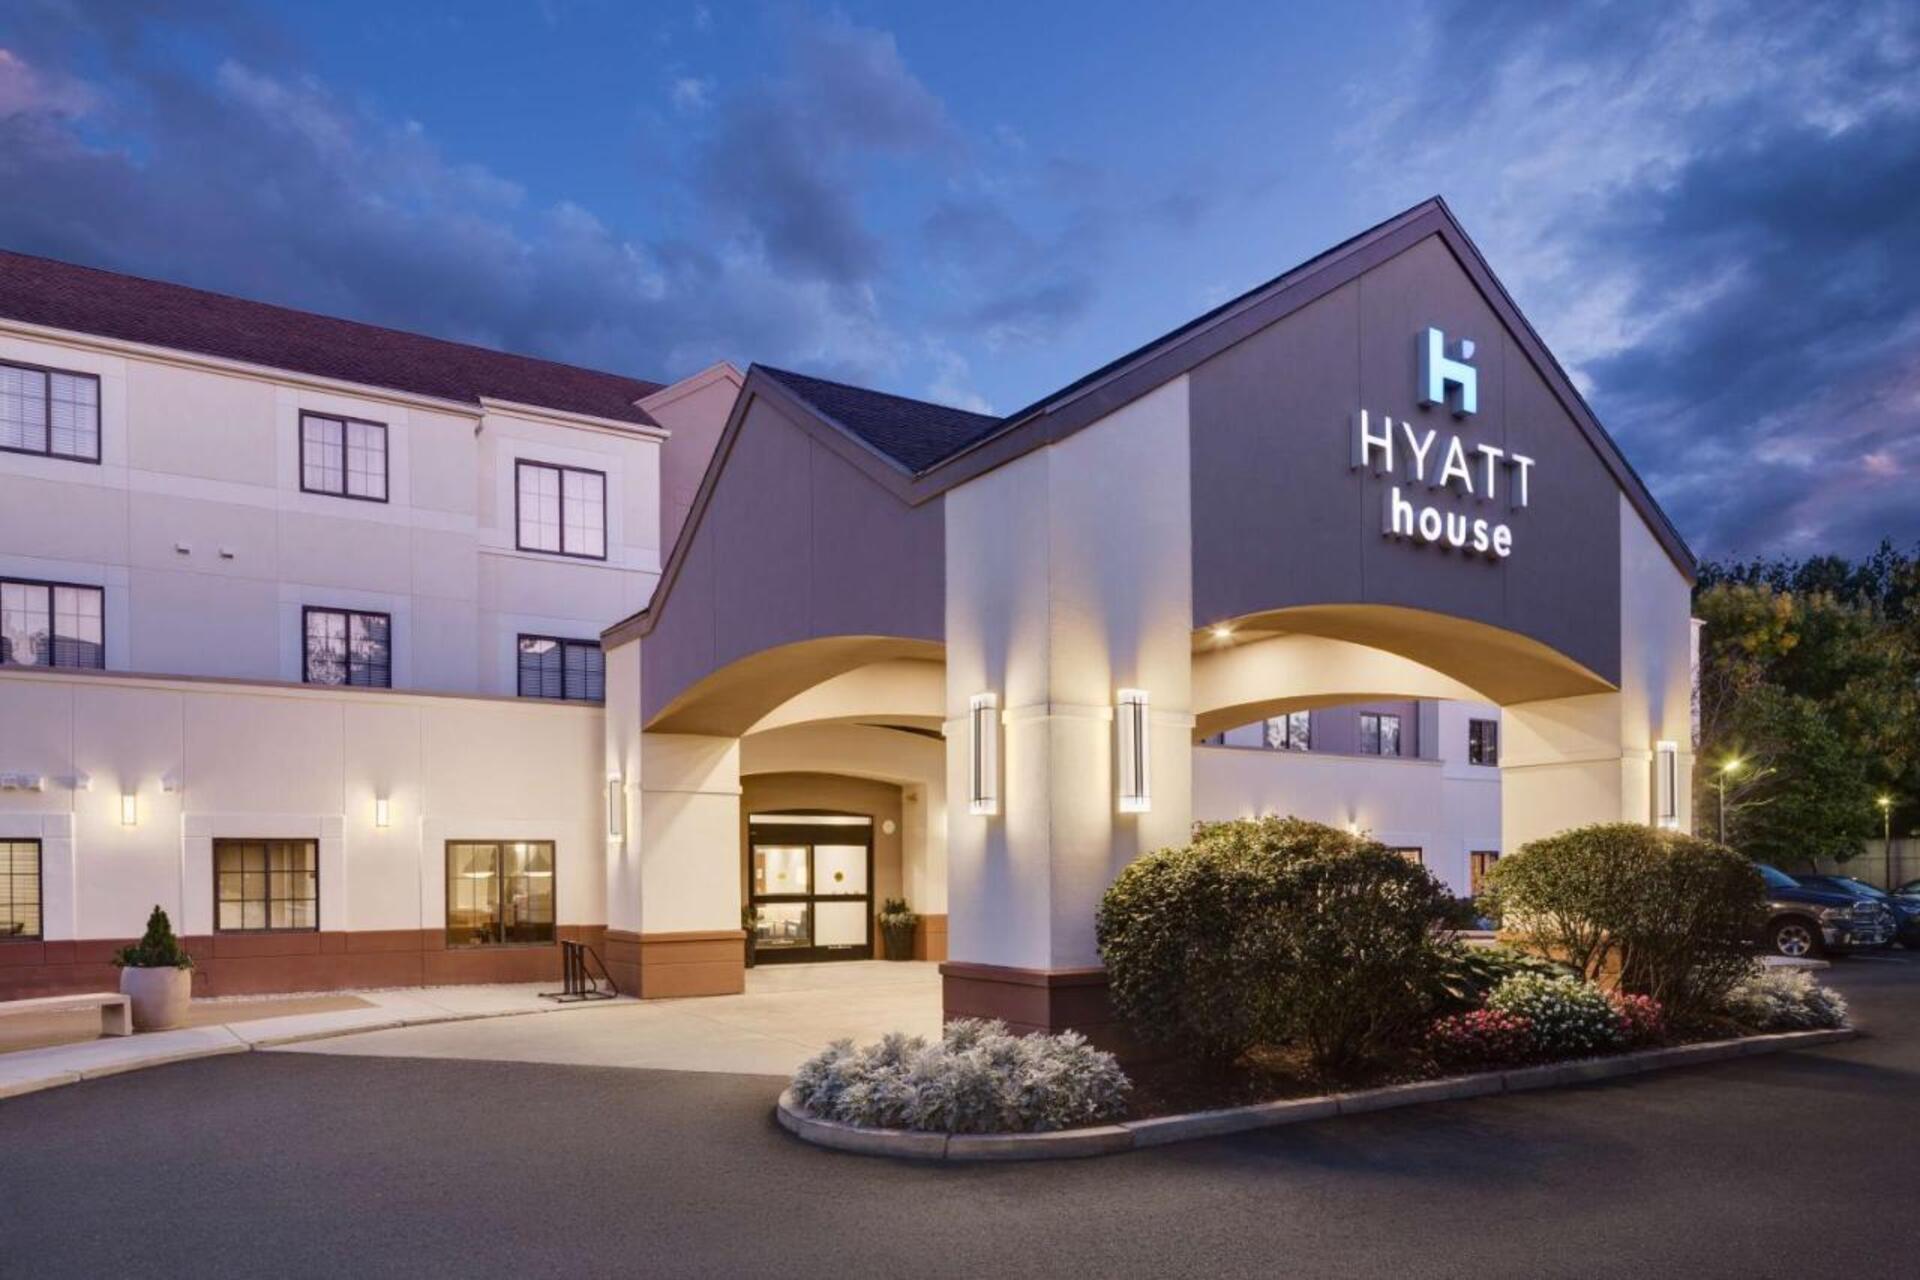 Hyatt House Boston/Waltham in Waltham, MA